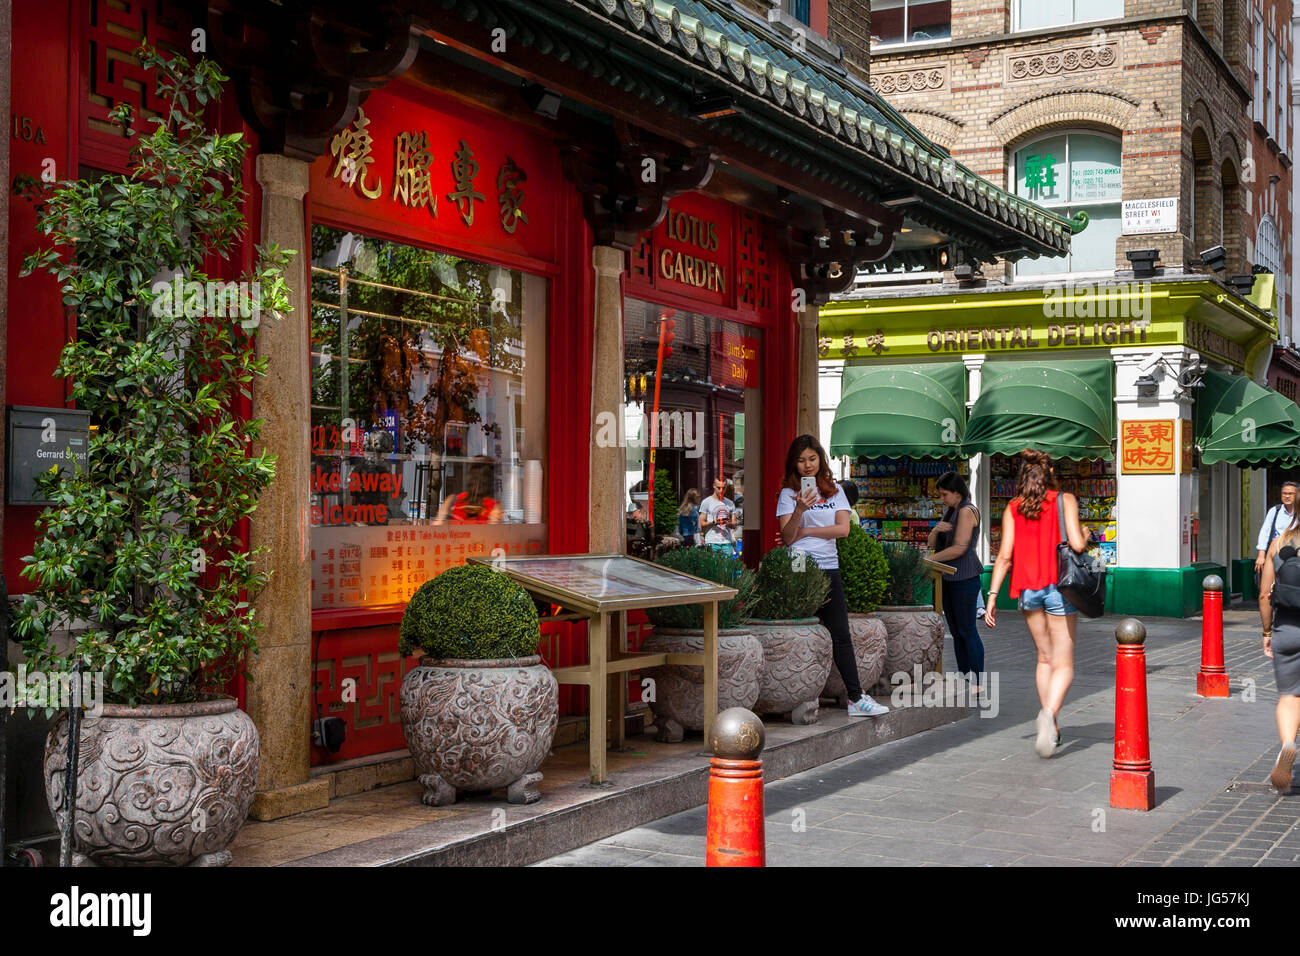 Un restaurant chinois et un supermarché, Gerrard Street, Chinatown, Londres, UK Banque D'Images